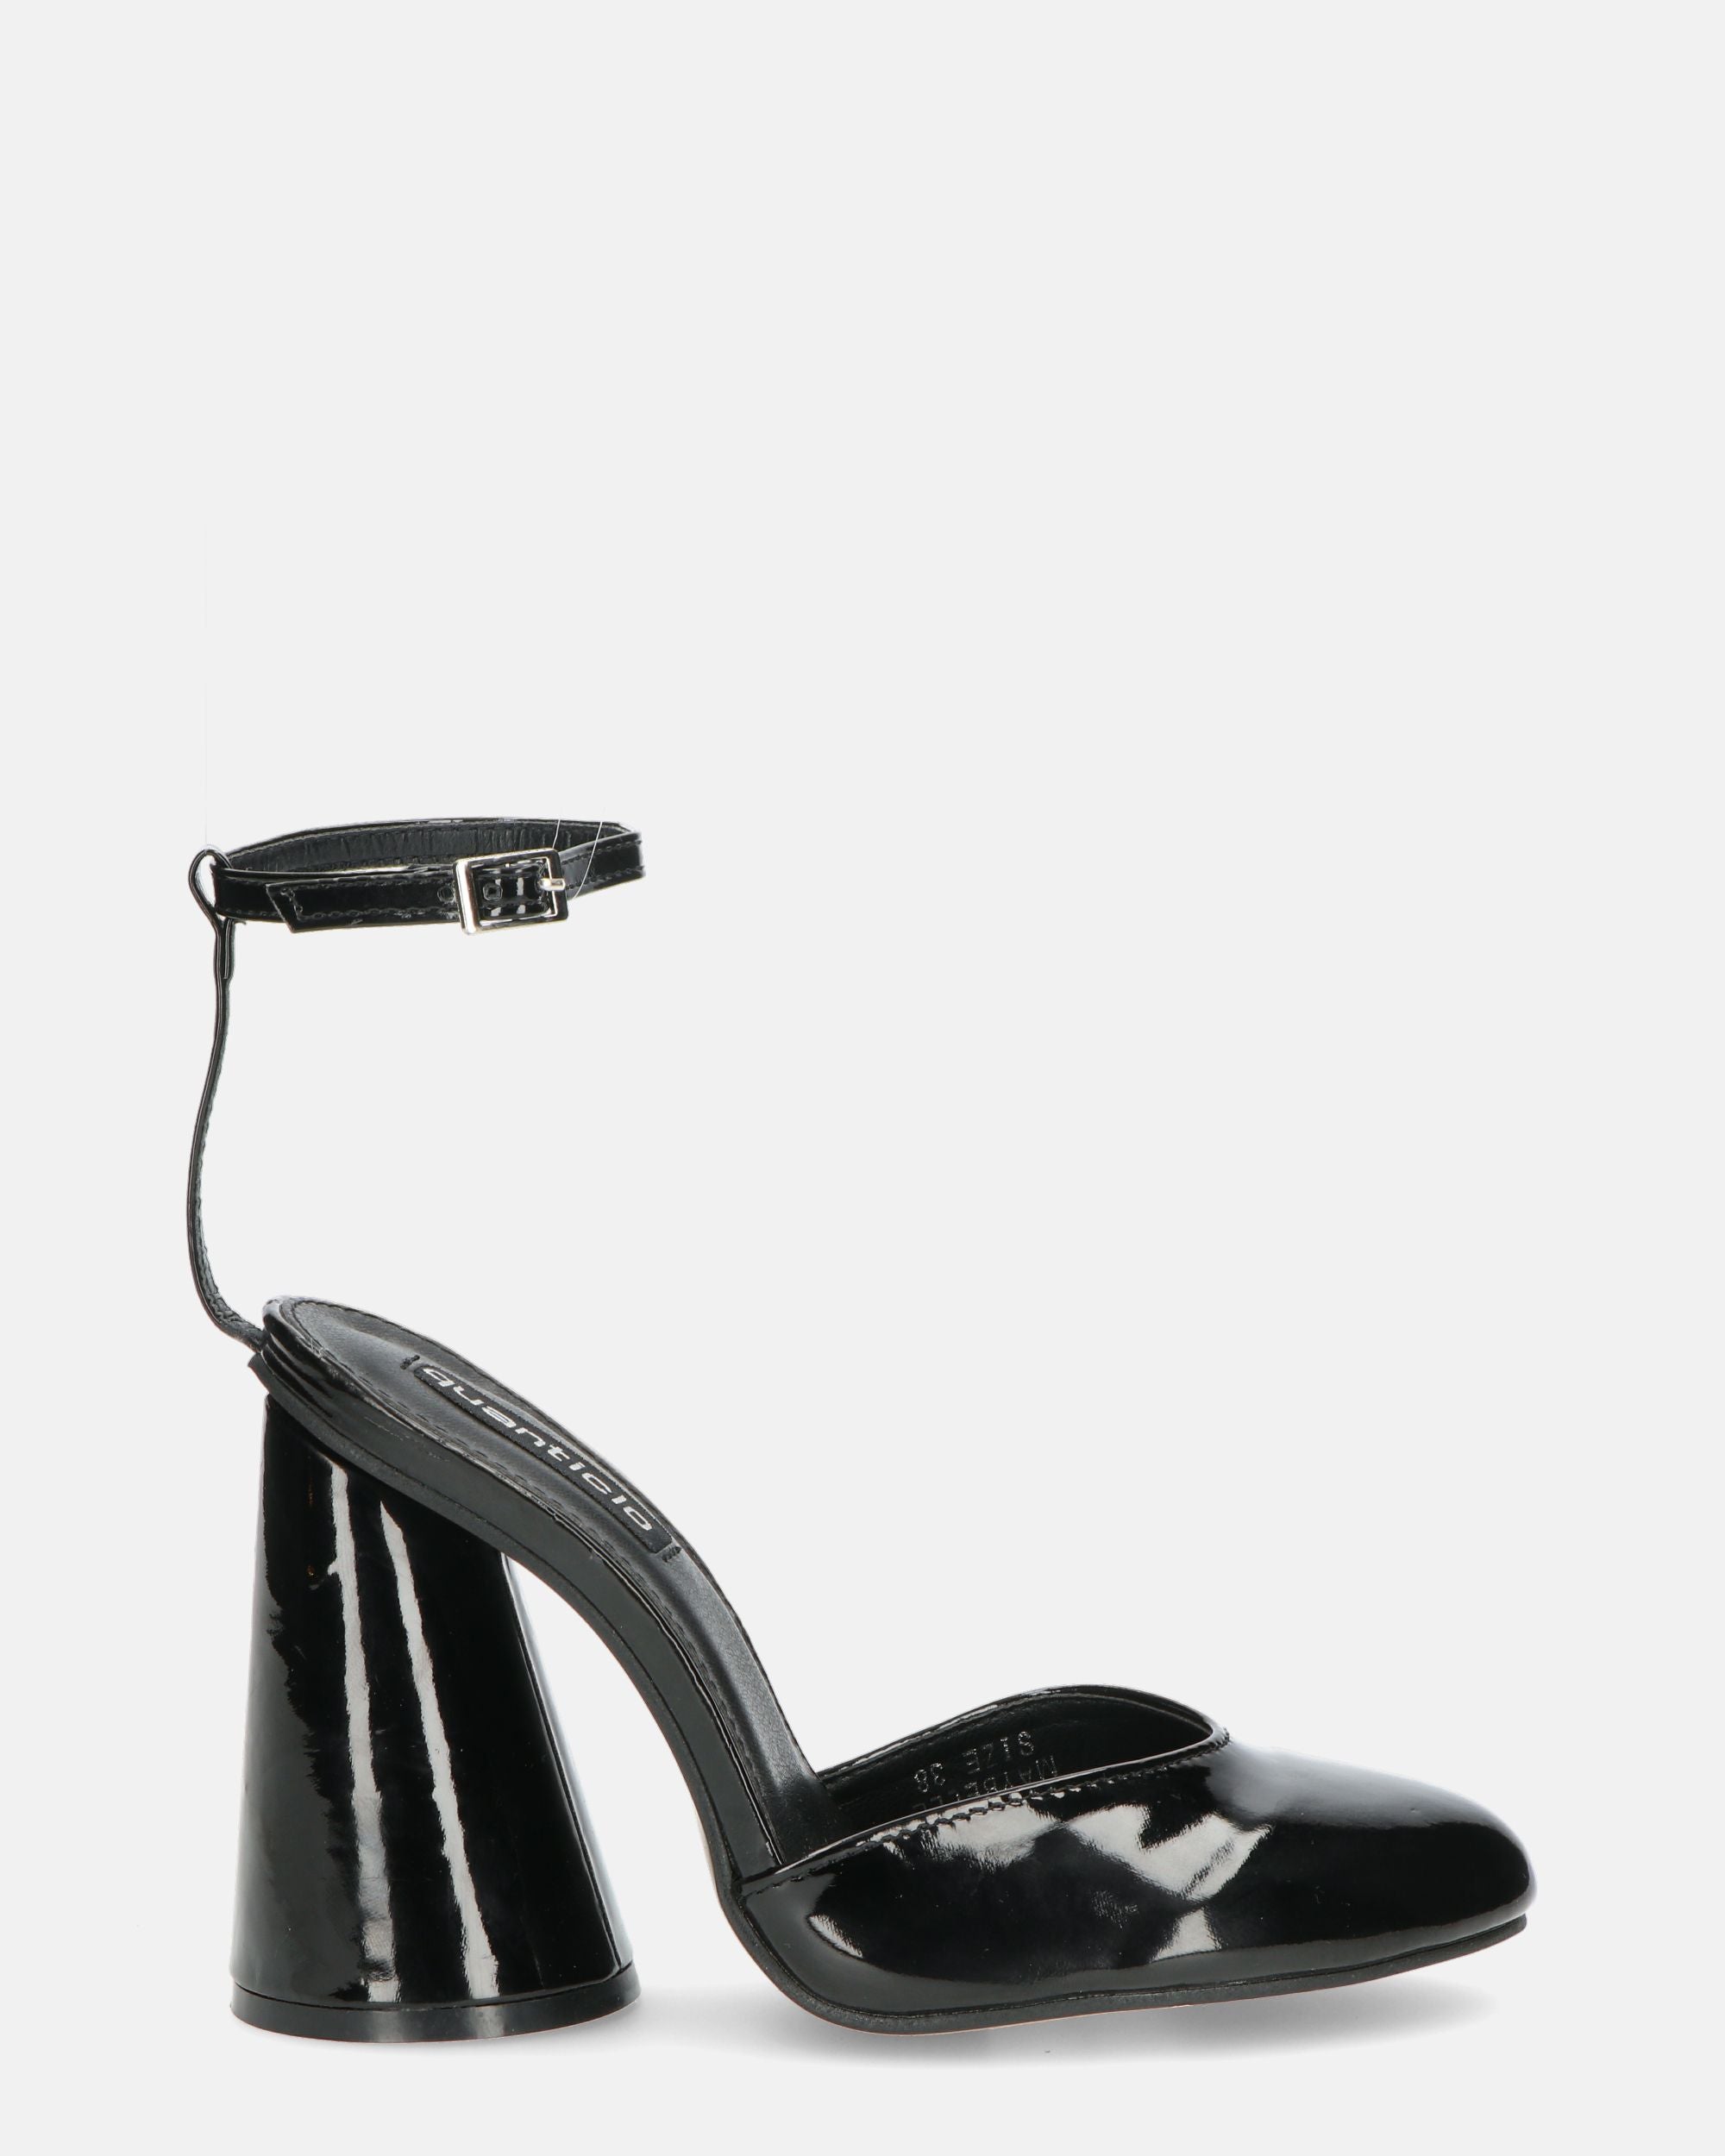 MAYBELLE - sandali in glassy nero con tacco cilindrico